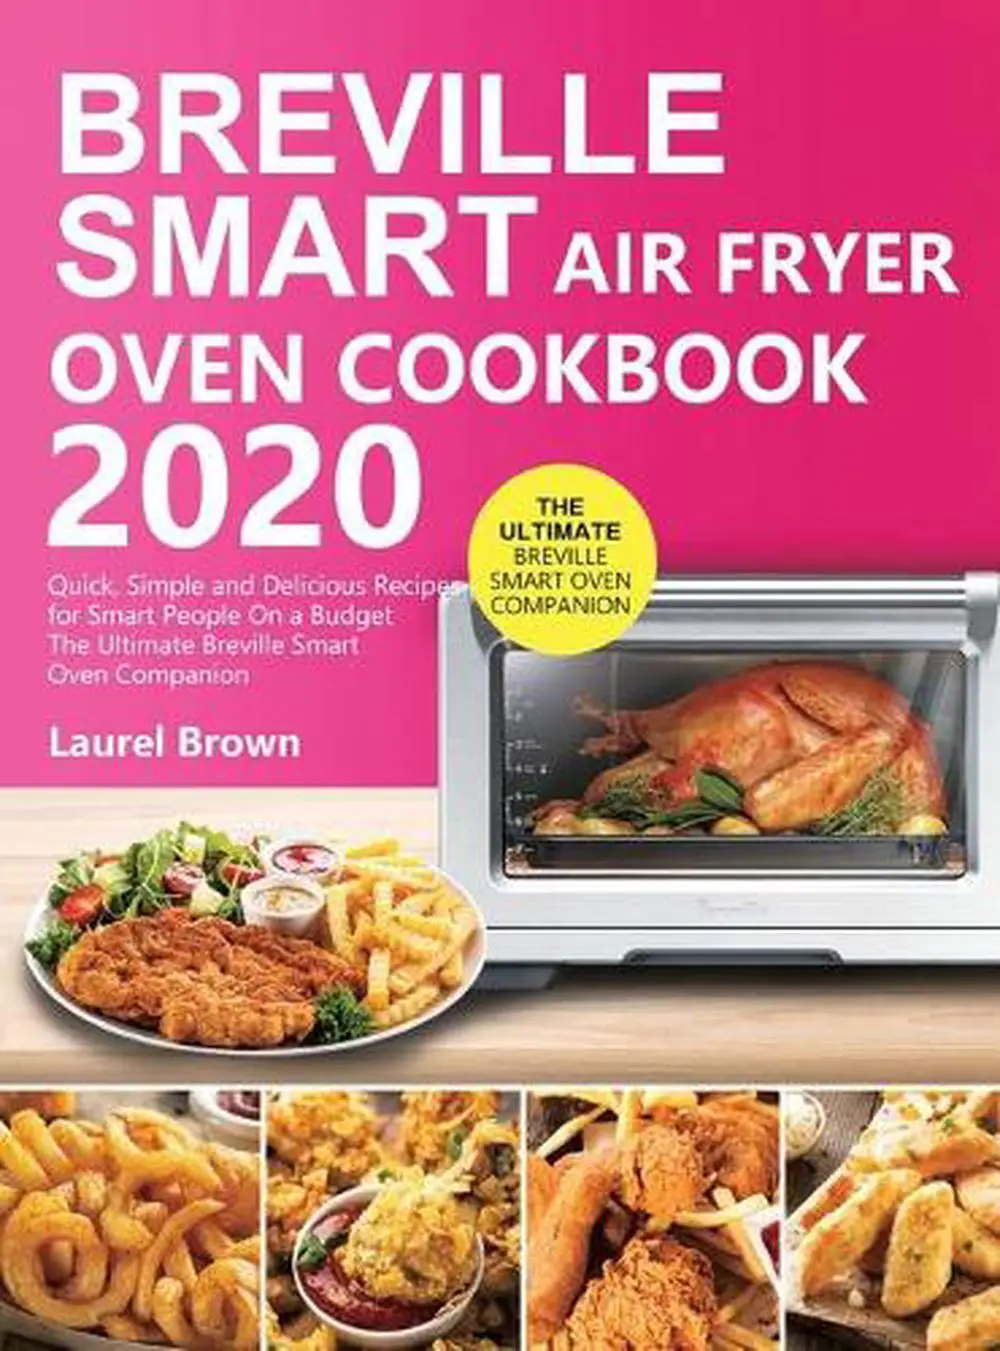 Breville Smart Air Fryer Oven Cookbook 2020 by Laurel ...